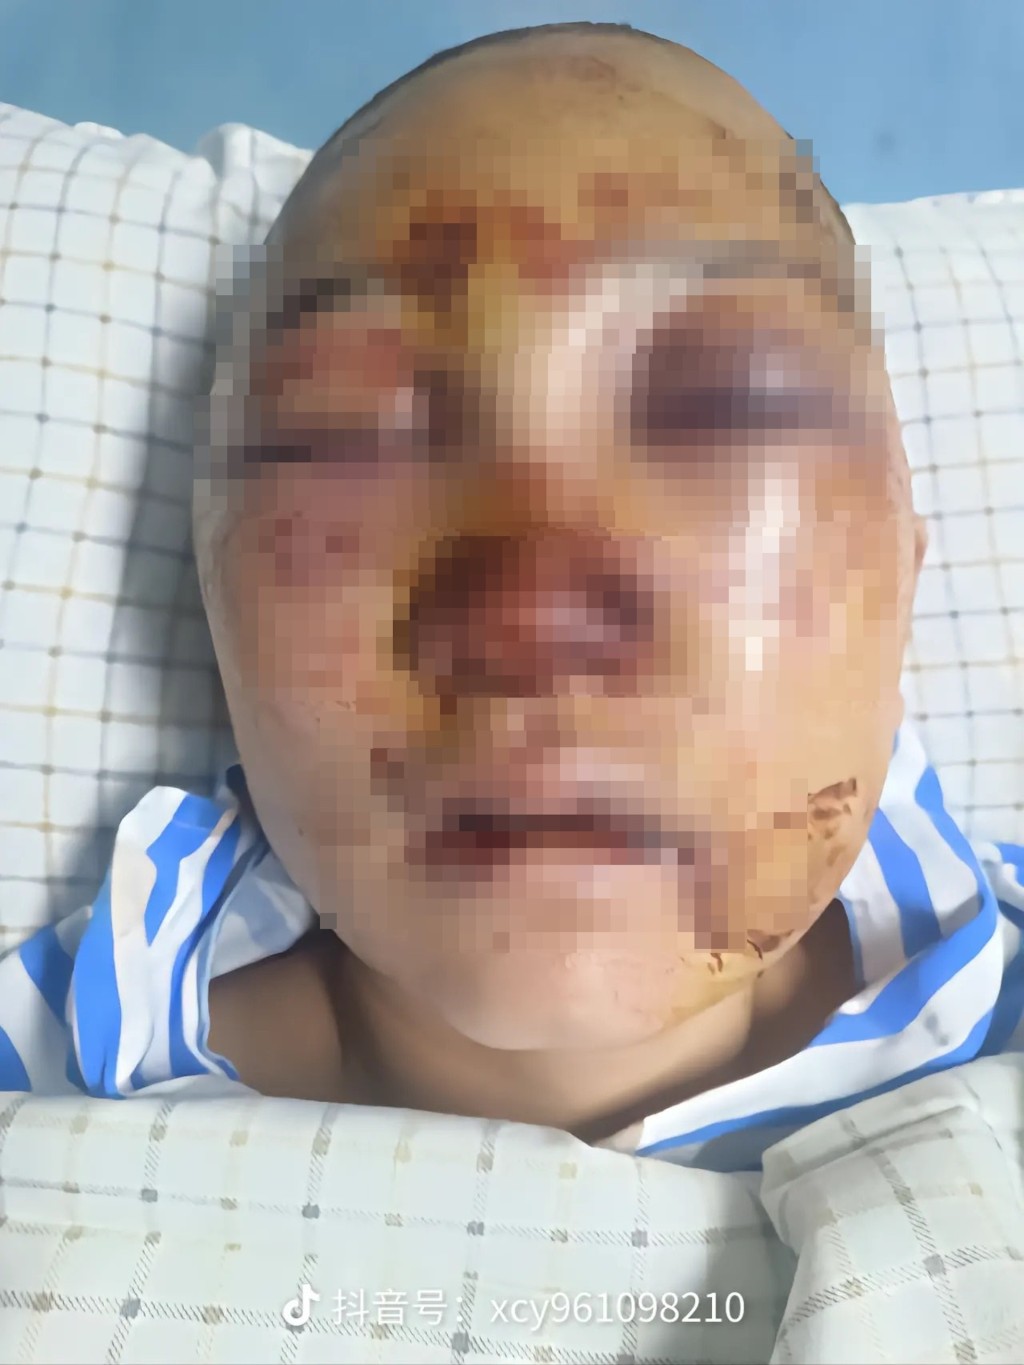 浙江女網紅臉部嚴重受傷。 抖音圖